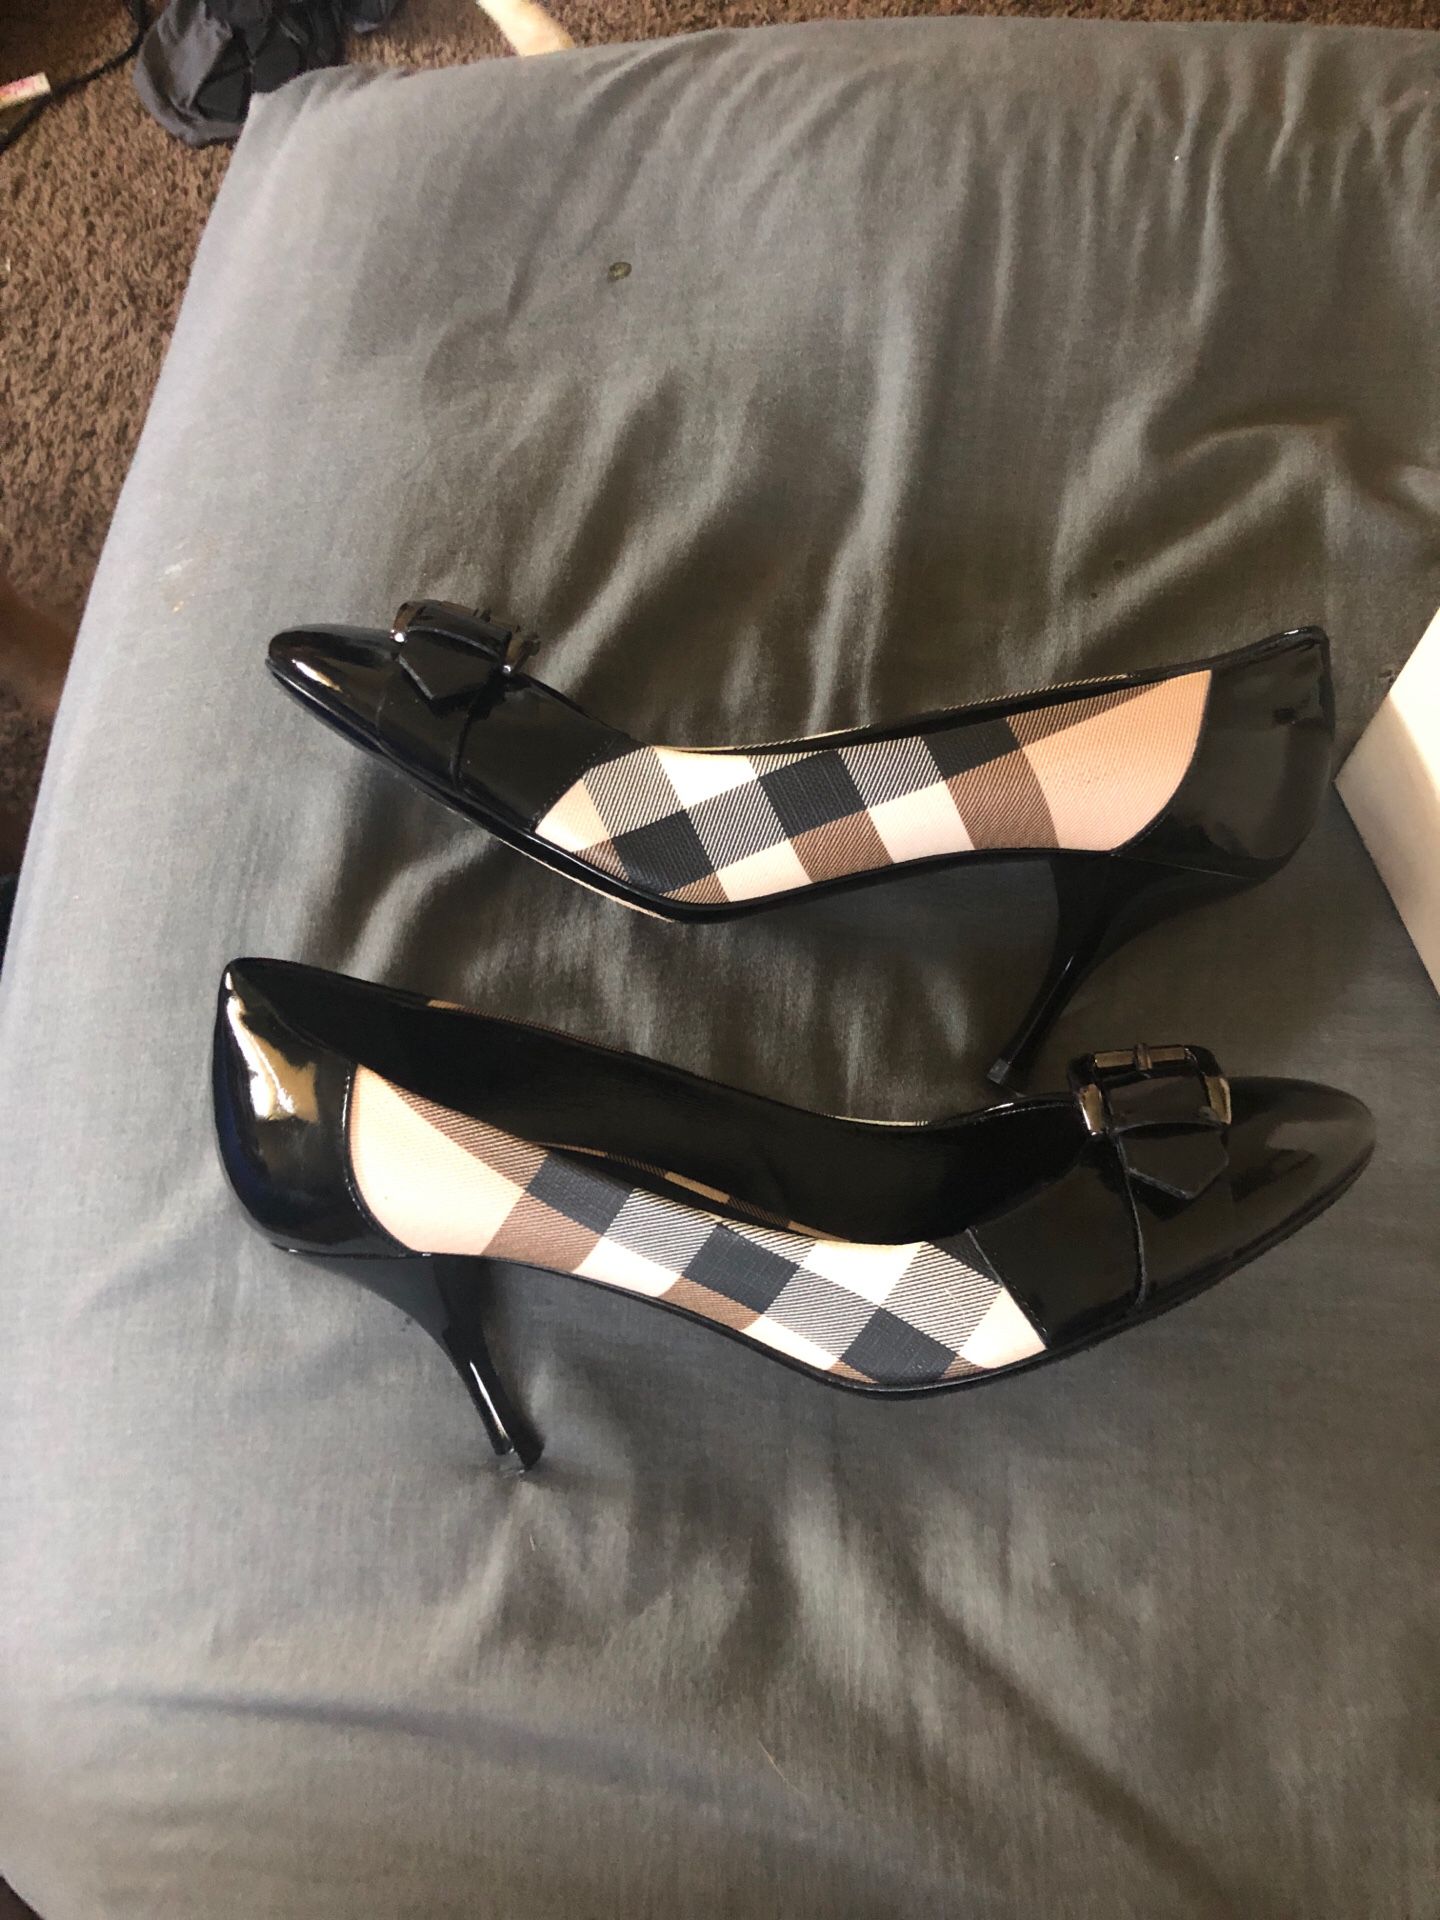 Burberry heels